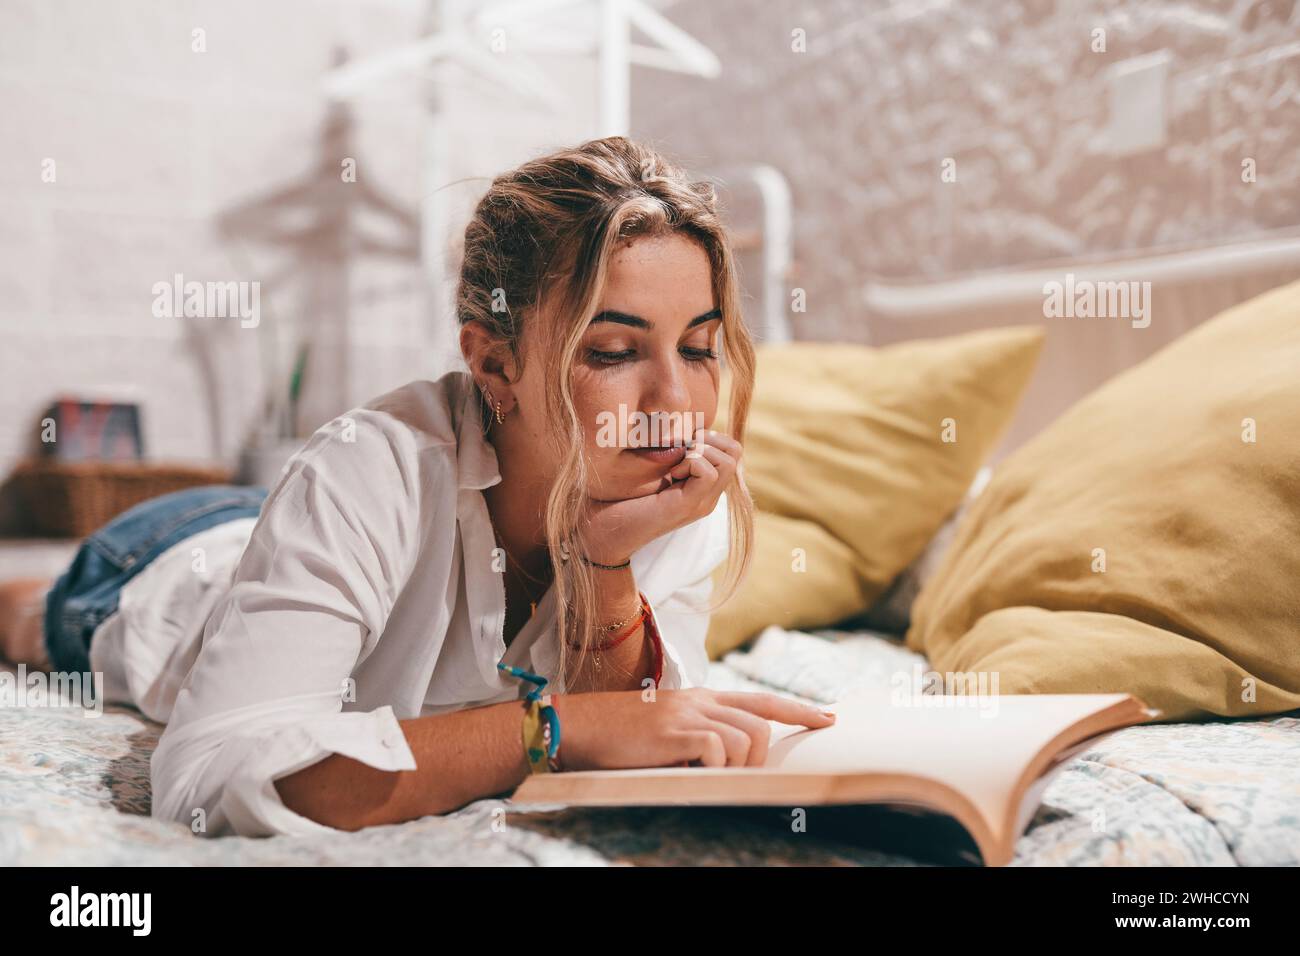 Junge kaukasische Mädchen entspannen im komfortablen Schlafzimmer und lesen interessantes Buch zu Hause Wochenende, lächelnde tausendjährige Frau Ruhe in gemütlichem Bett Genießen Sie Roman, Hobby, Entspannungskonzept Stockfoto